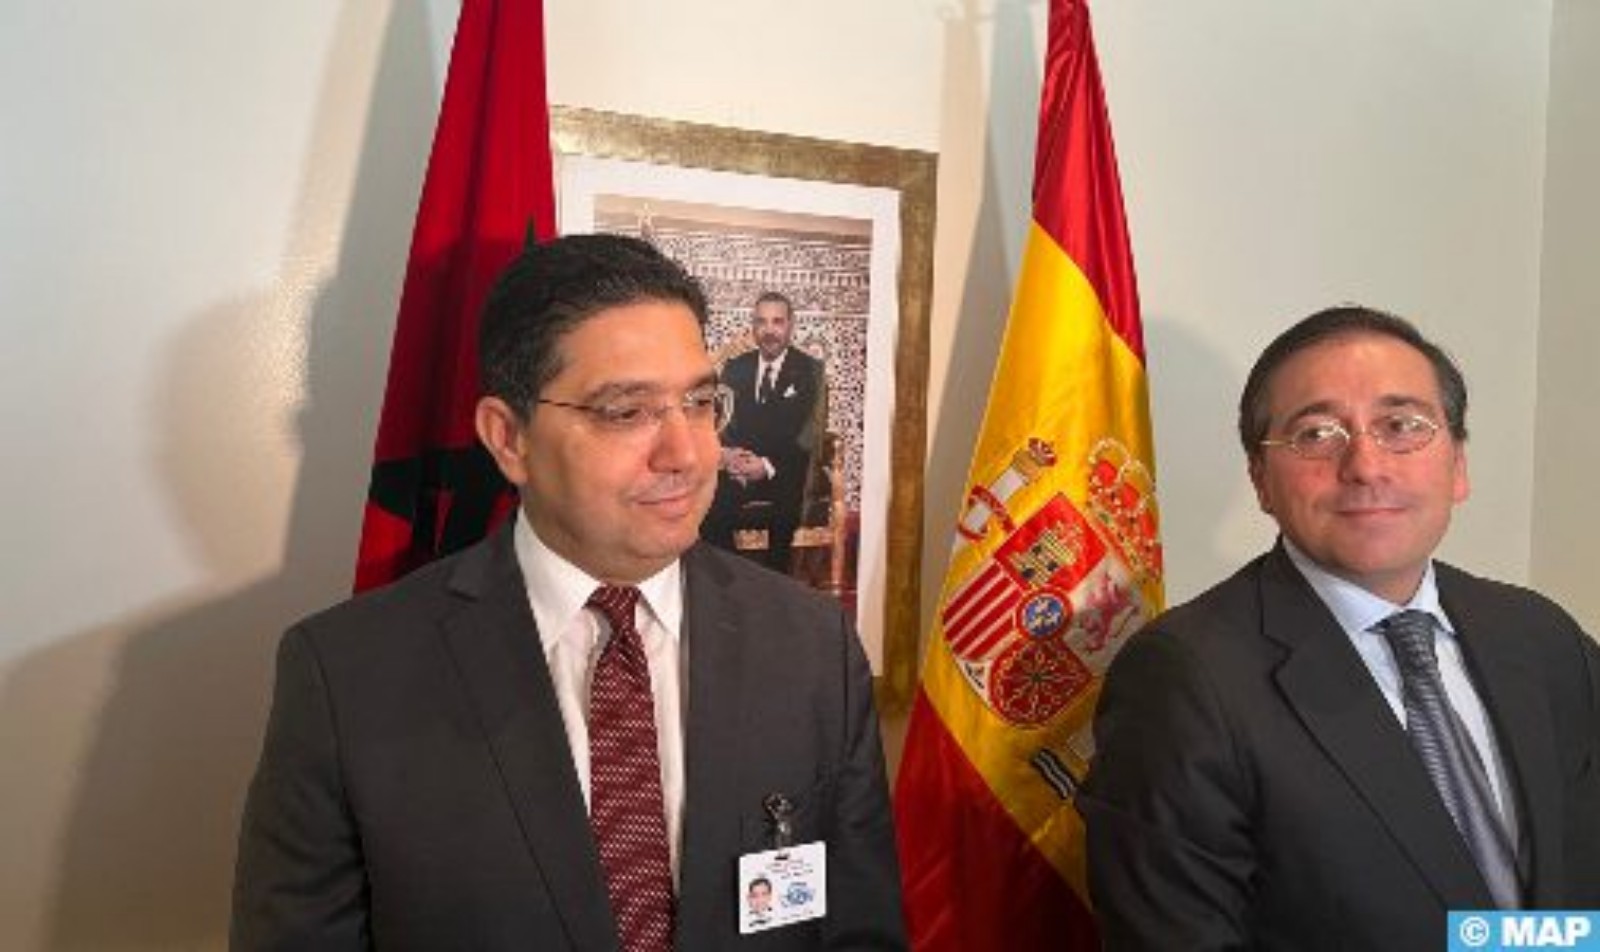 بالنسبة للمغرب، إسبانيا “شريك وحليف موثوق” (السيد بوريطة)